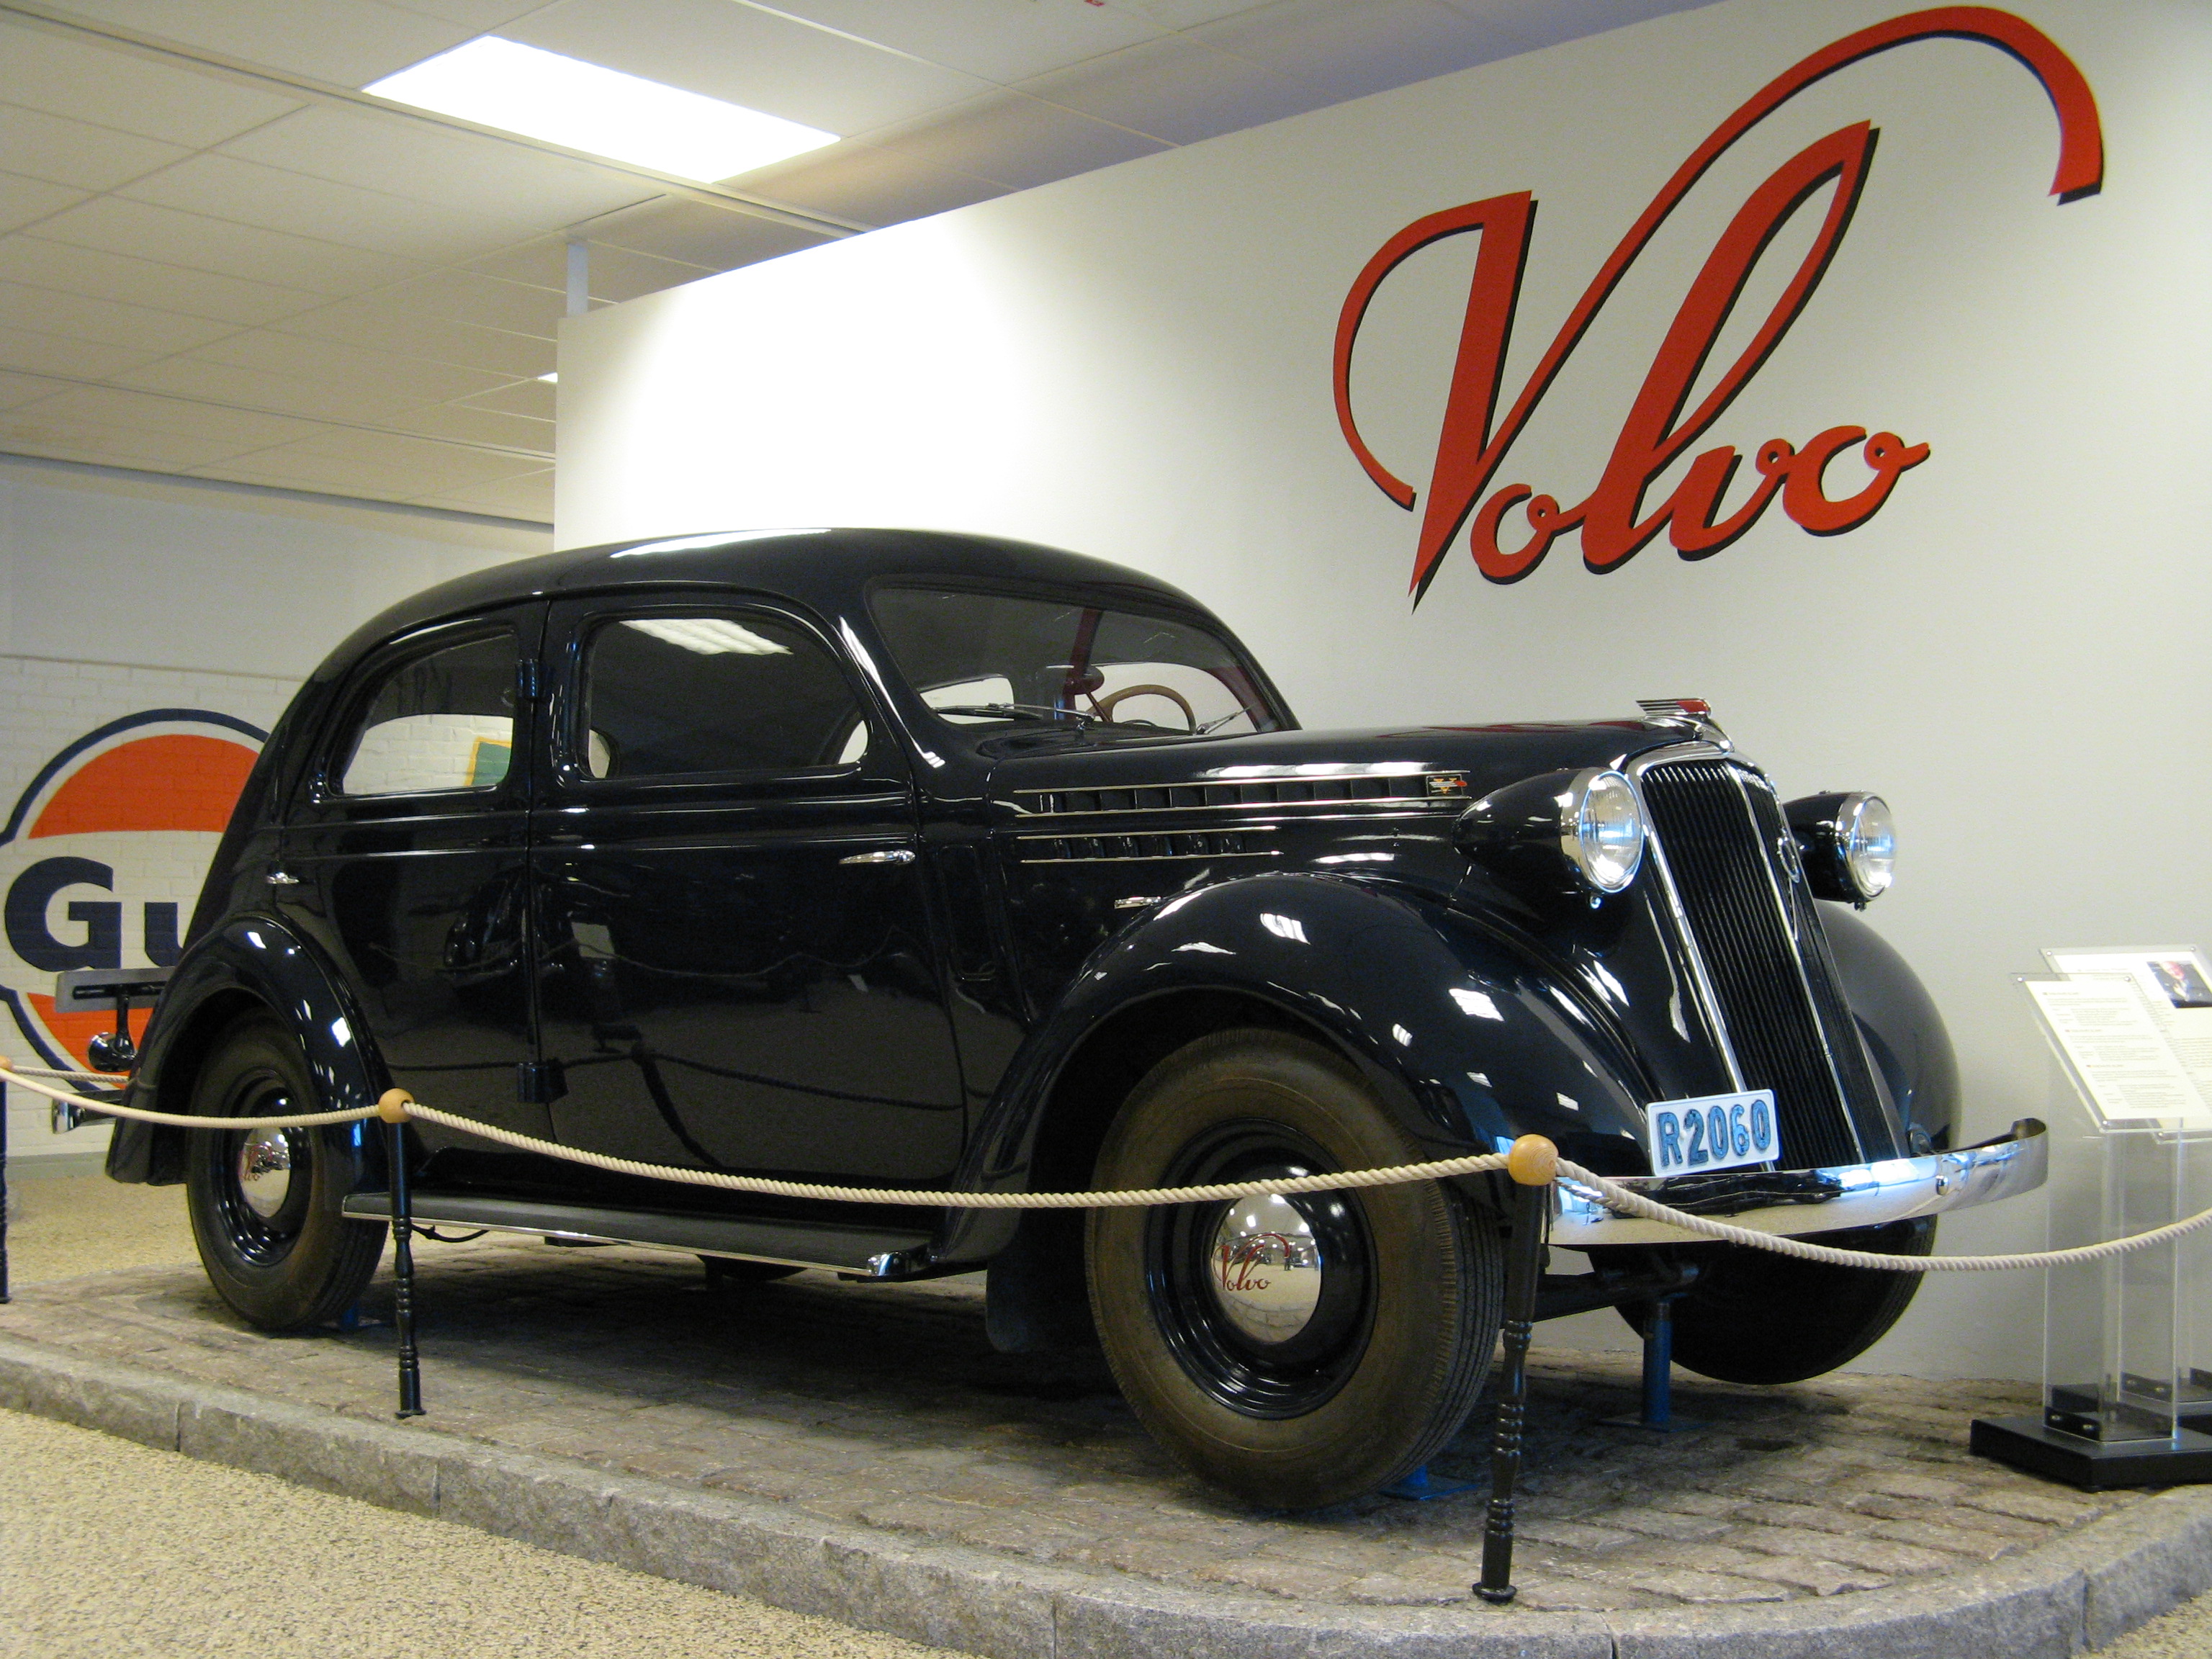 Volvo PV52